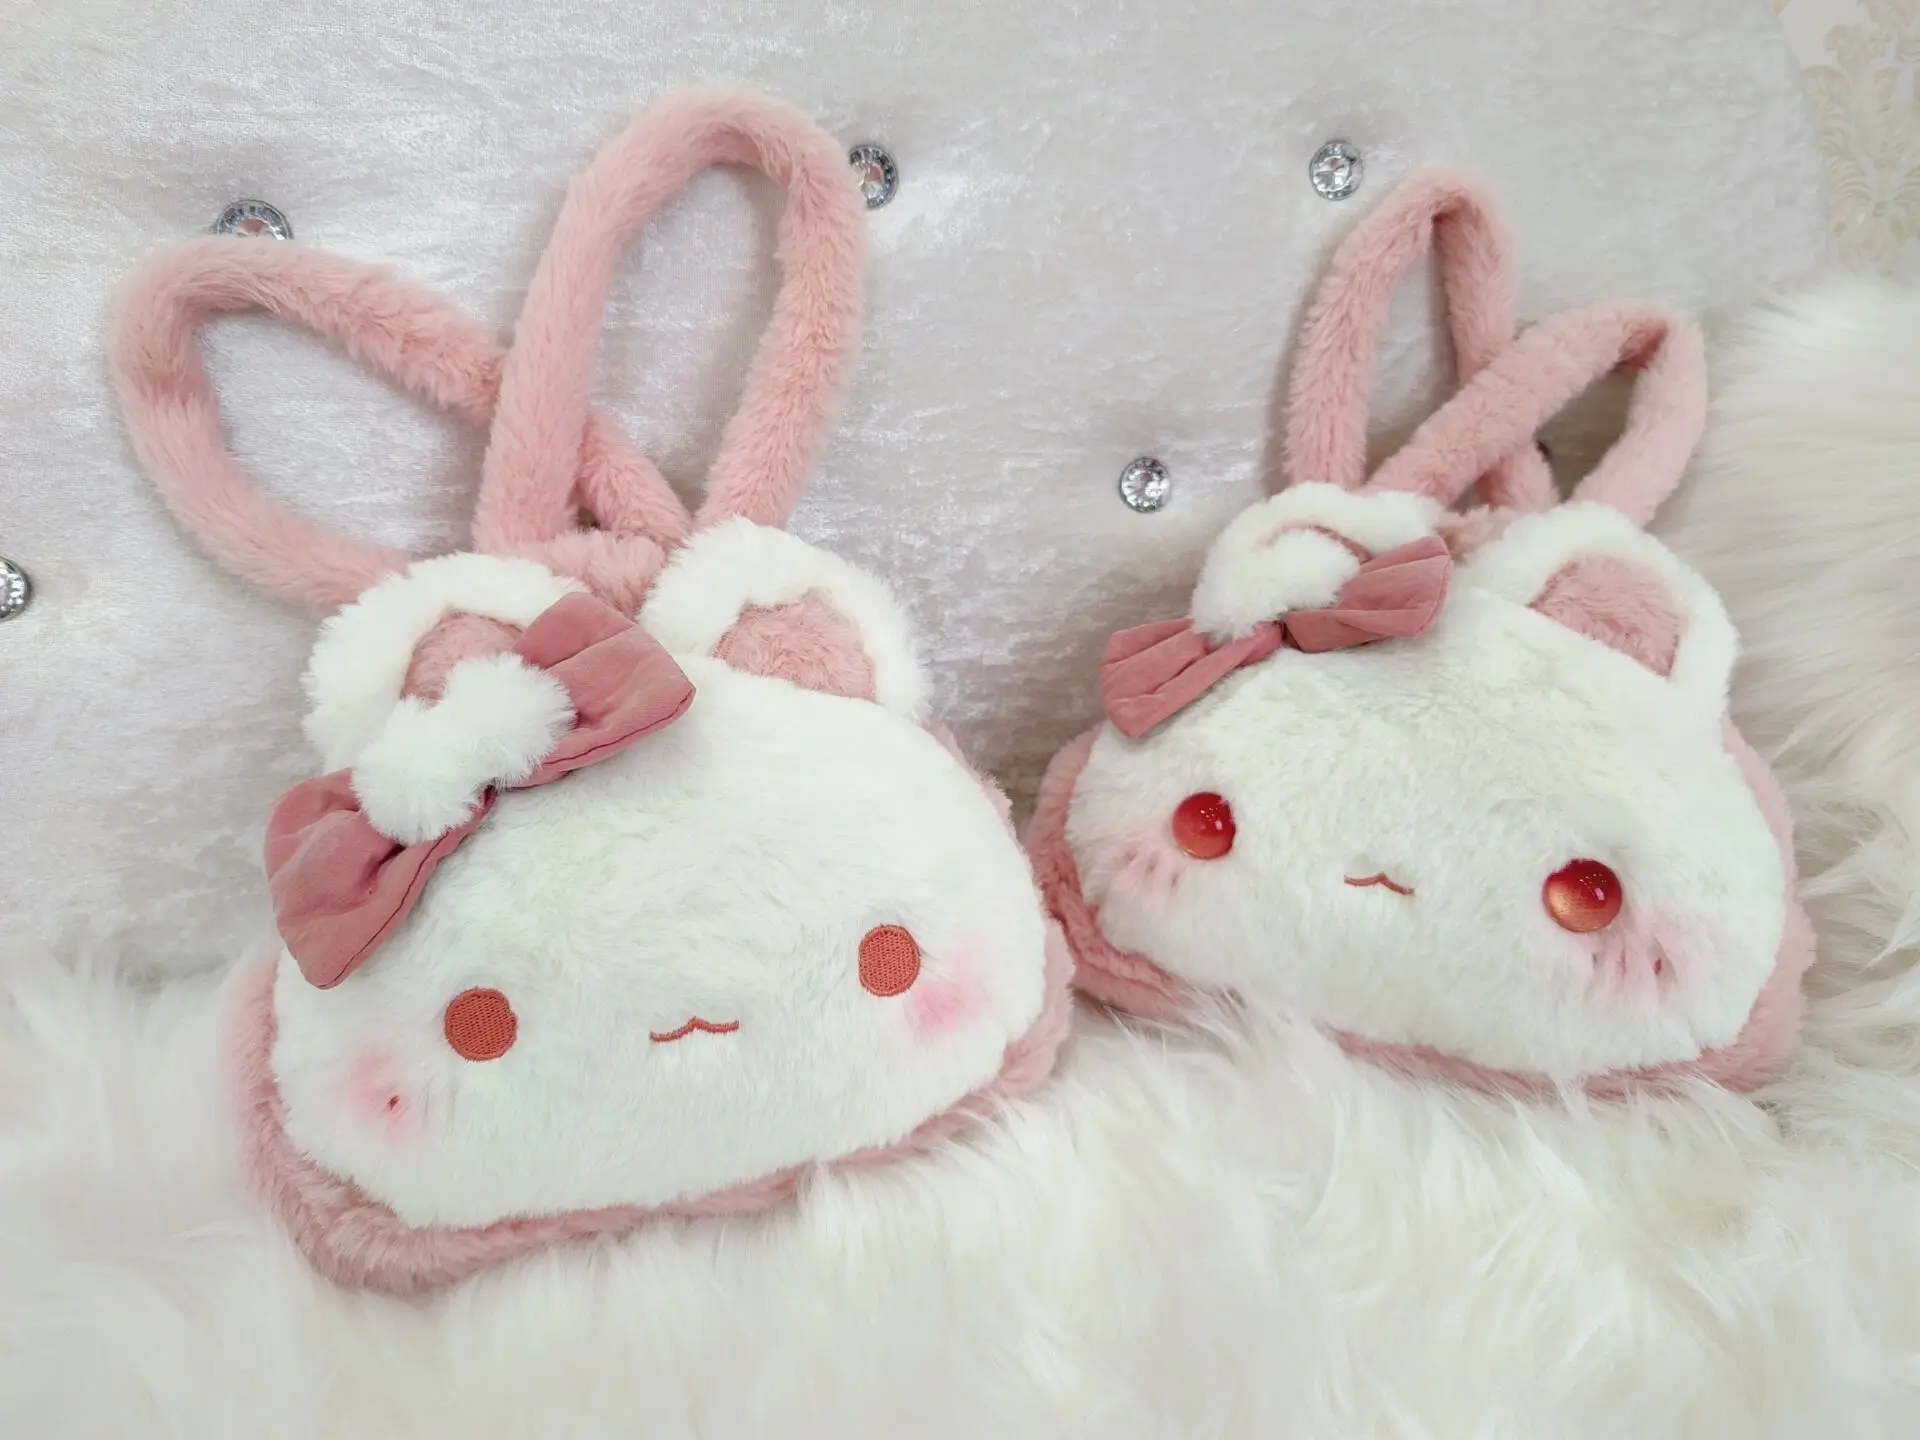 

Оригинальная в стиле "Лолита" JK плюшевый кролик сумка шпион сумка с кроликом белая Цветочная вышивка с кисточками милые девушки подарки на д...